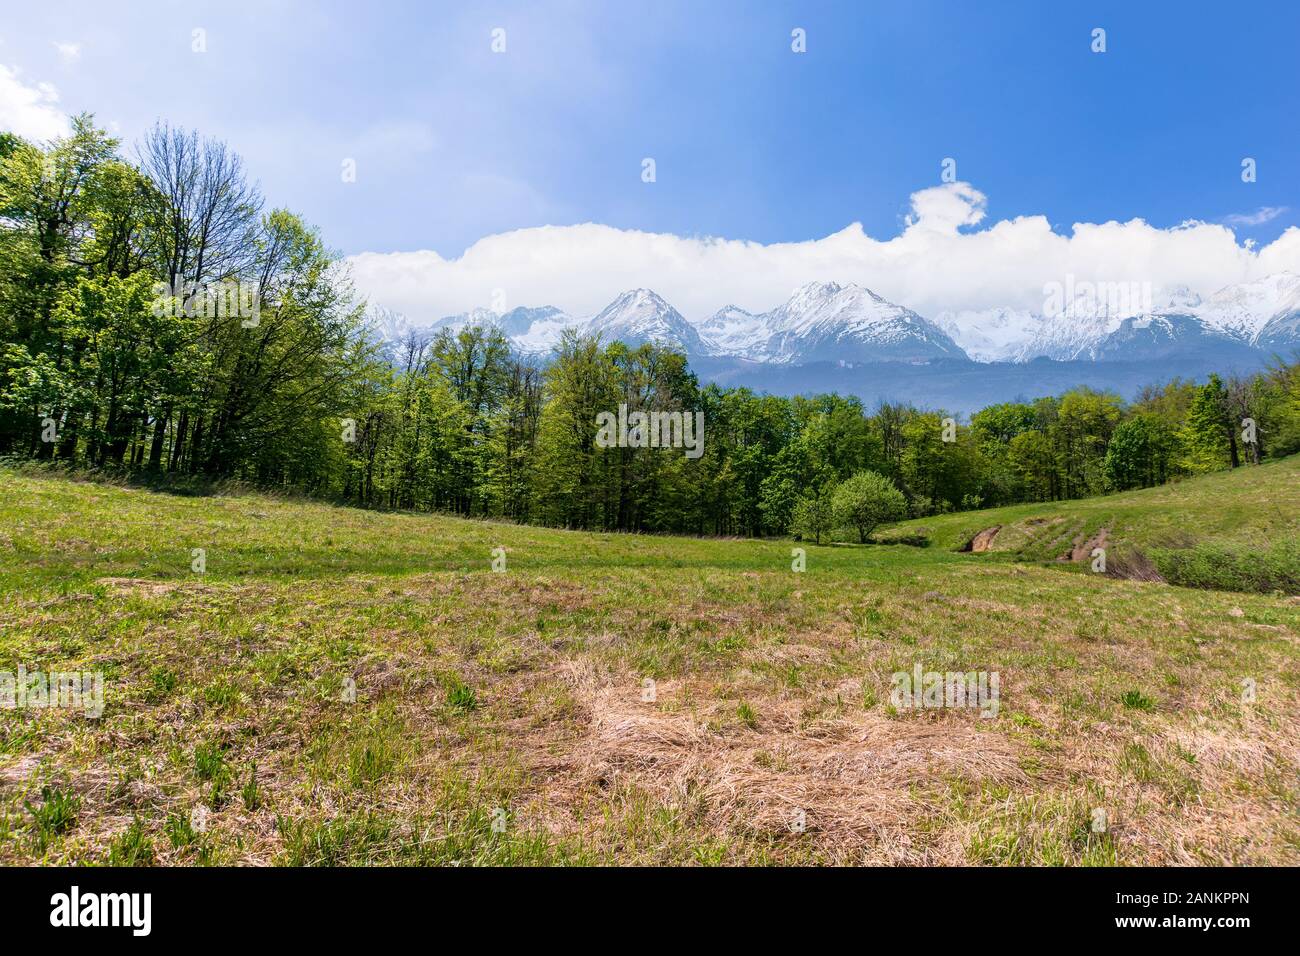 Idyllische frühling landschaft Composite. Wiese unter den Wald. Hohe Tatra Bergkamm mit Schnee bedeckten Gipfeln in der Ferne. sonniges Wetter mit Stockfoto